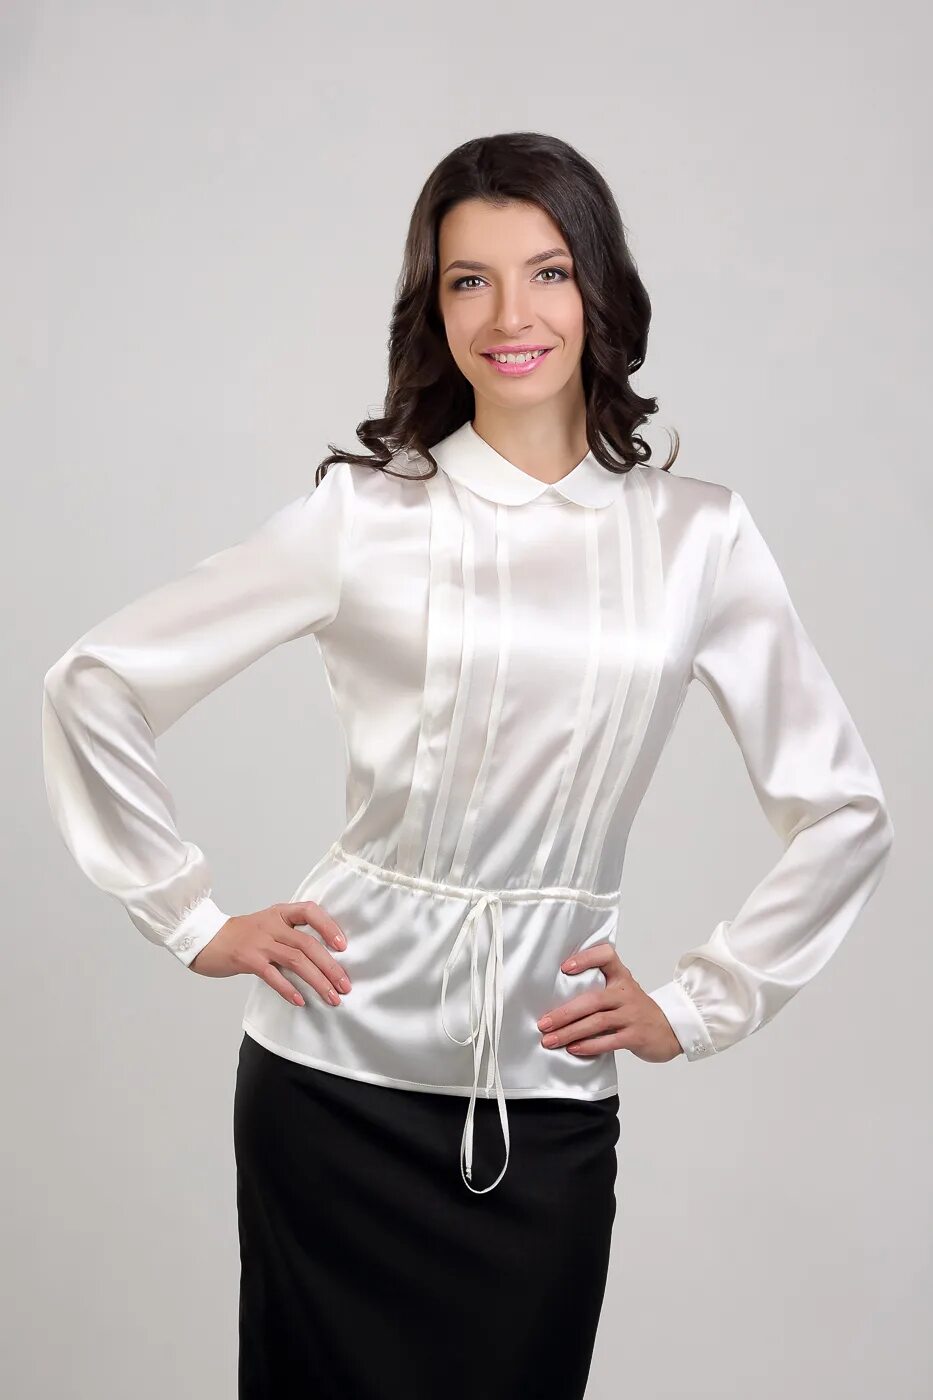 Нарядные блузки для женщин. Белая блузка. Белая нарядная блузка для женщин. Женщина в блузке. Блузка на выпуск